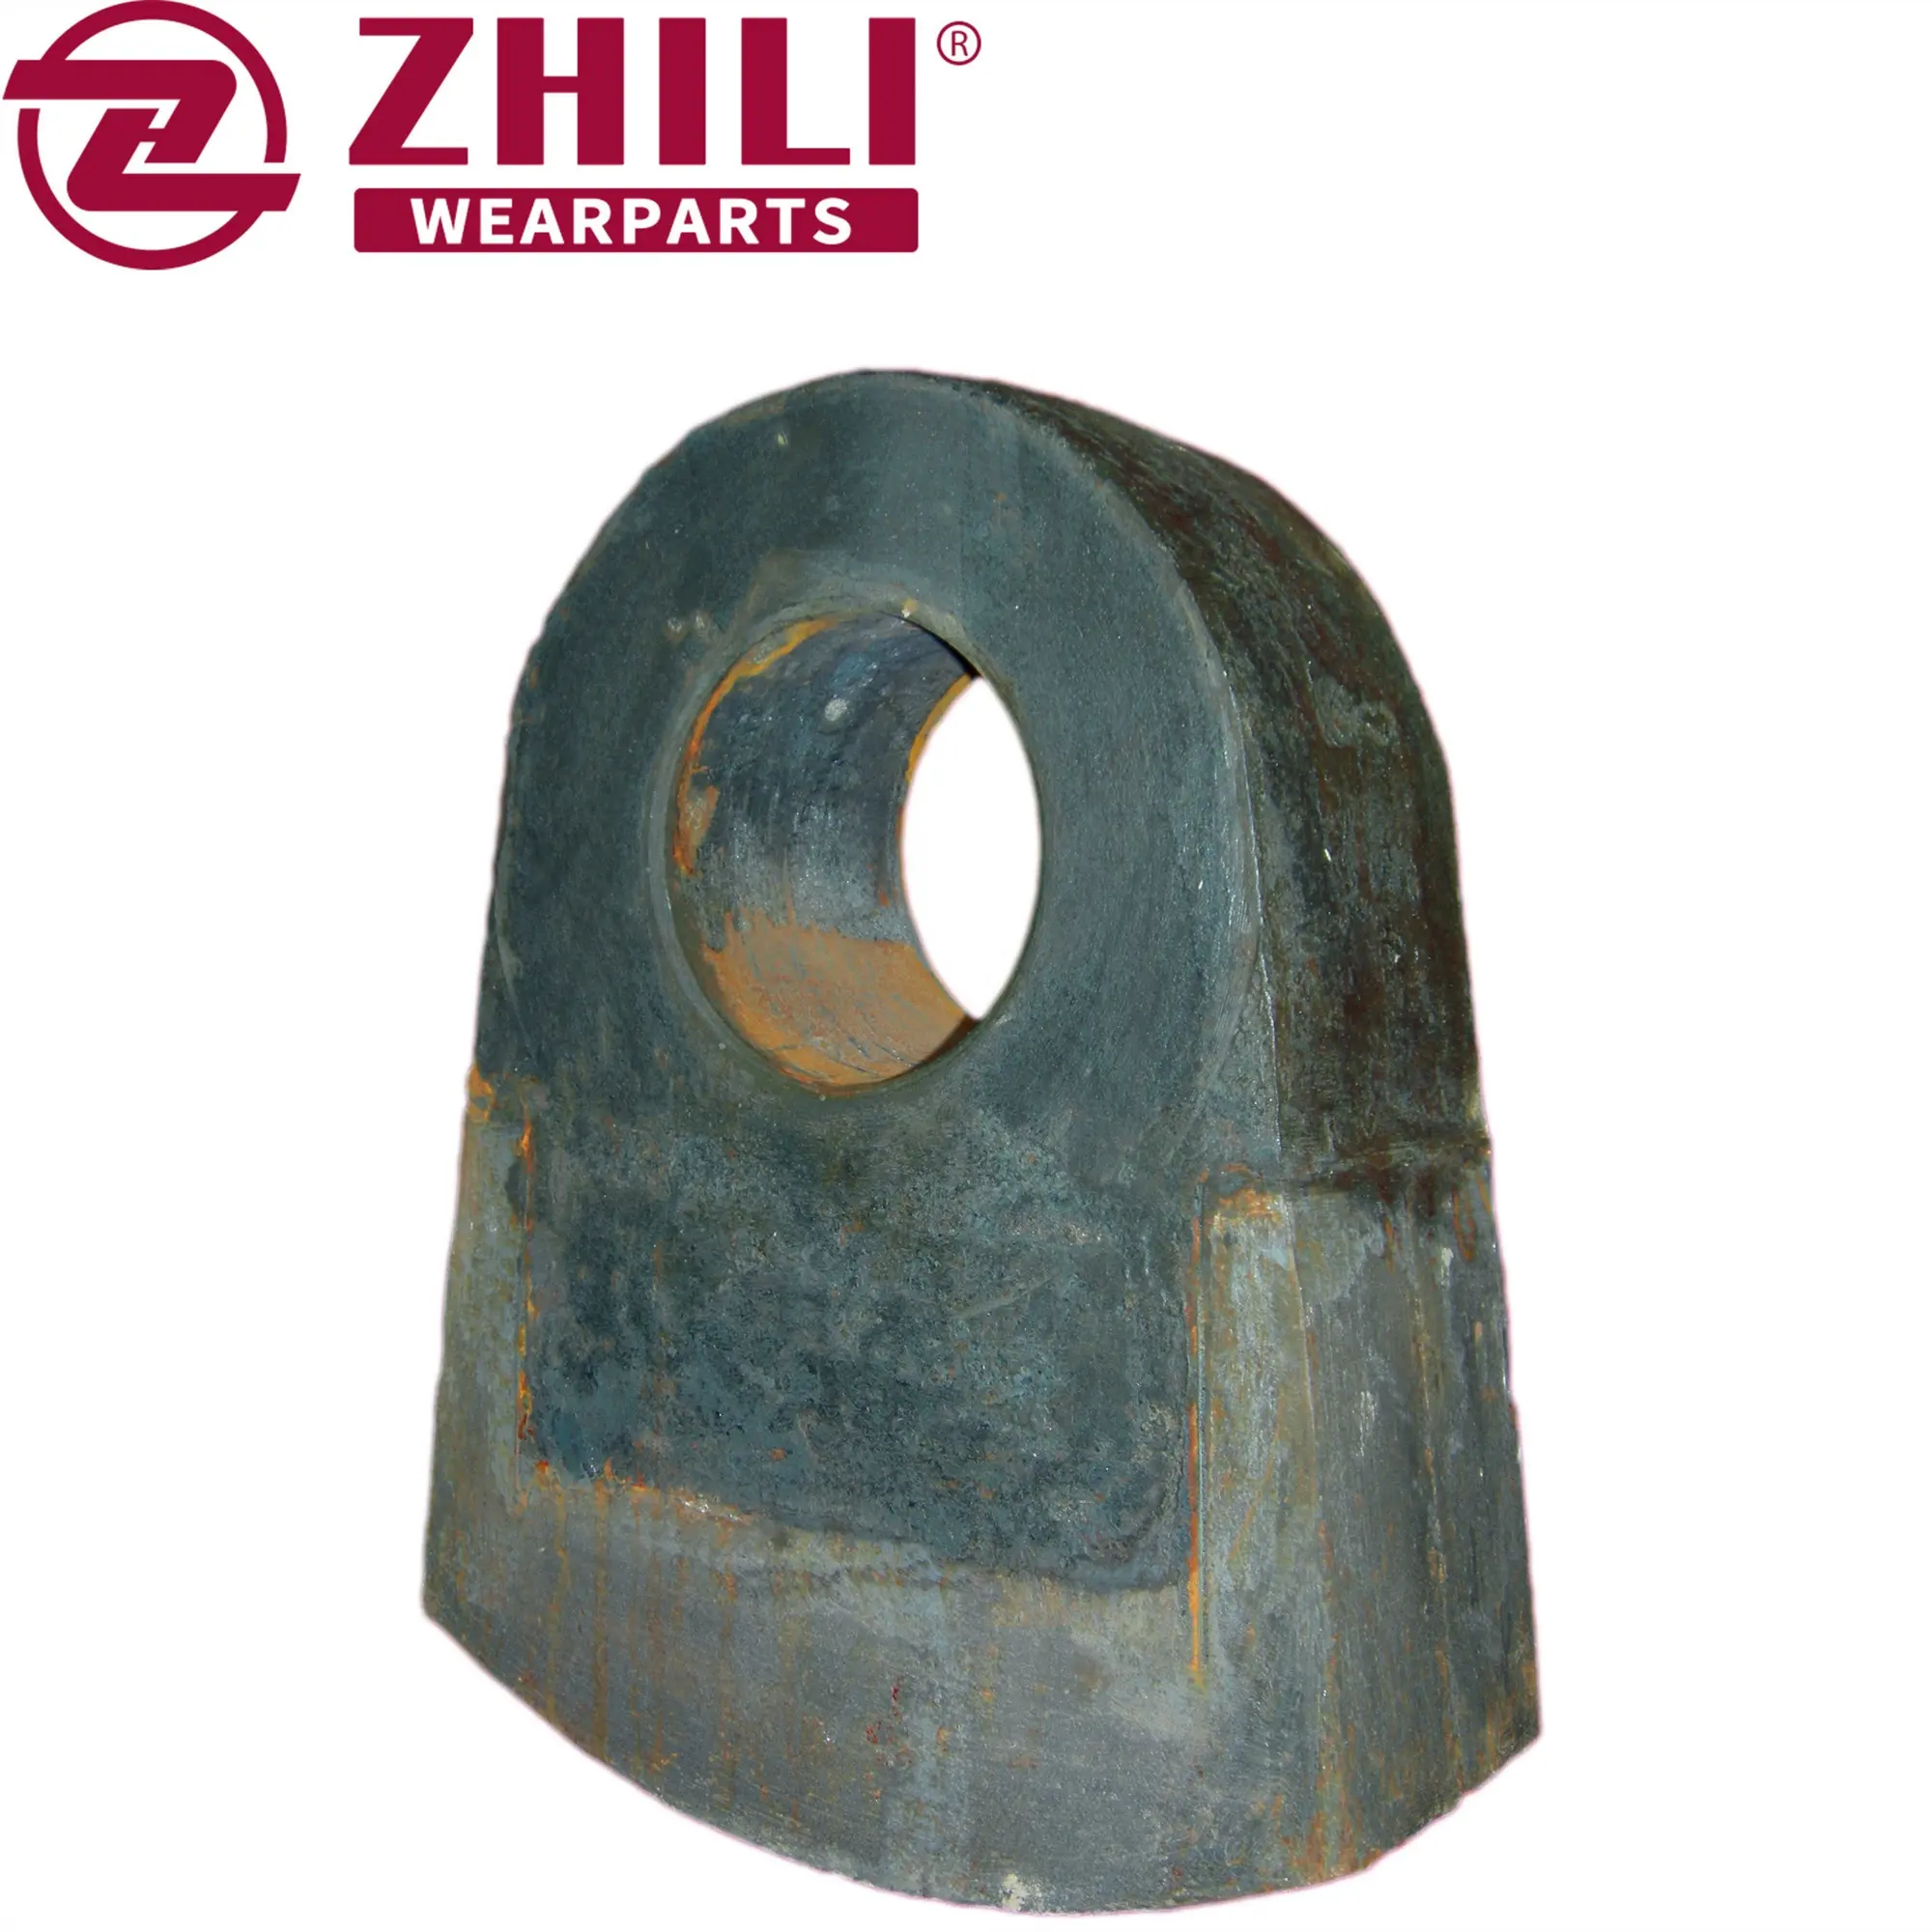 martillos de trituracion de caliza yeso arcilla usados en cantera con material alto cromo y acero aleado